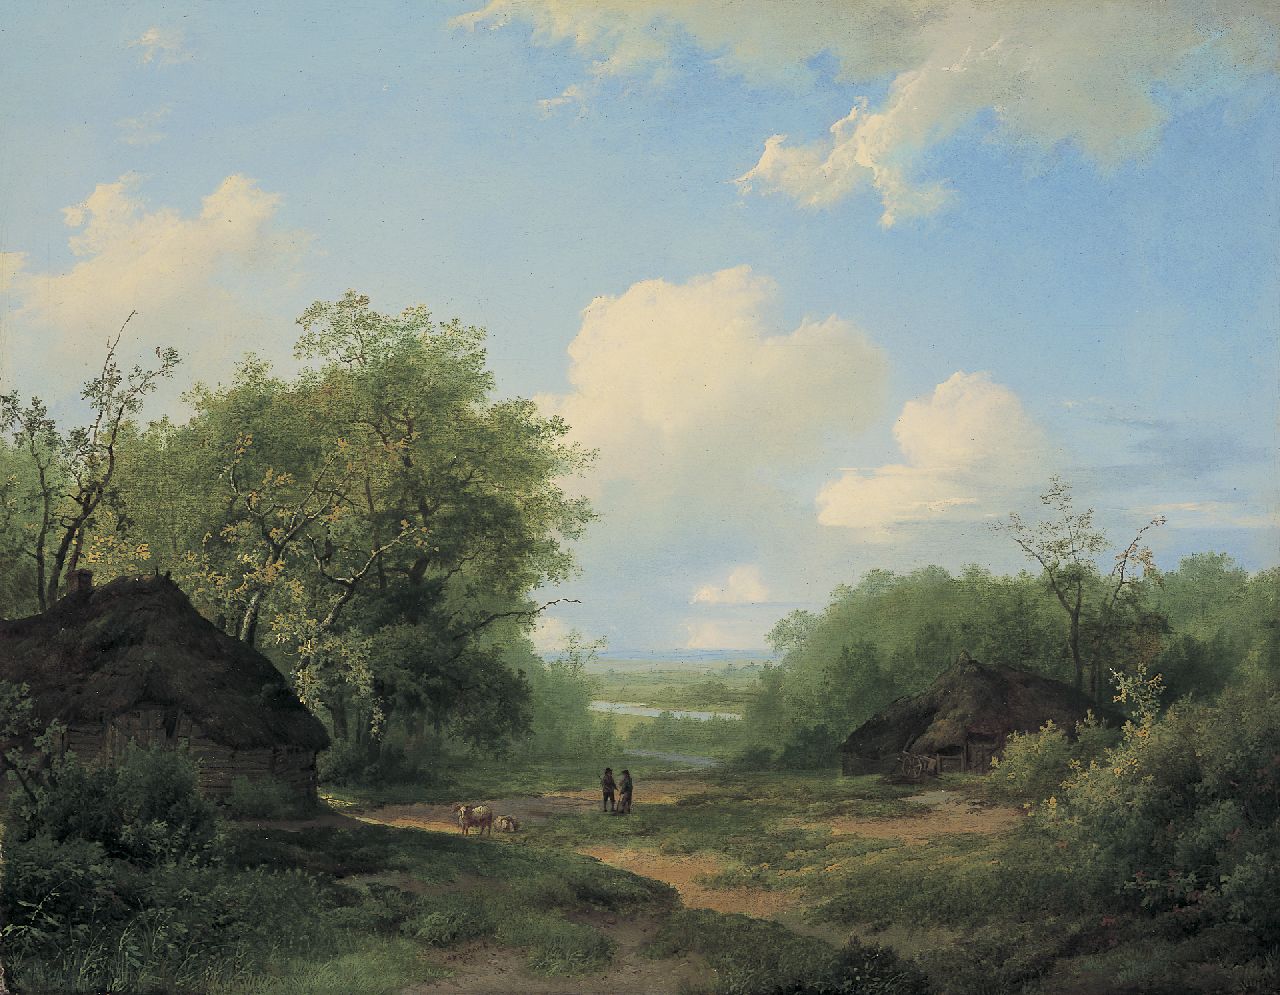 Koekkoek I M.A.  | Marinus Adrianus Koekkoek I, A river landscape in summer, Öl auf Leinwand 42,5 x 53,9 cm, signed l.c. und dated 1858